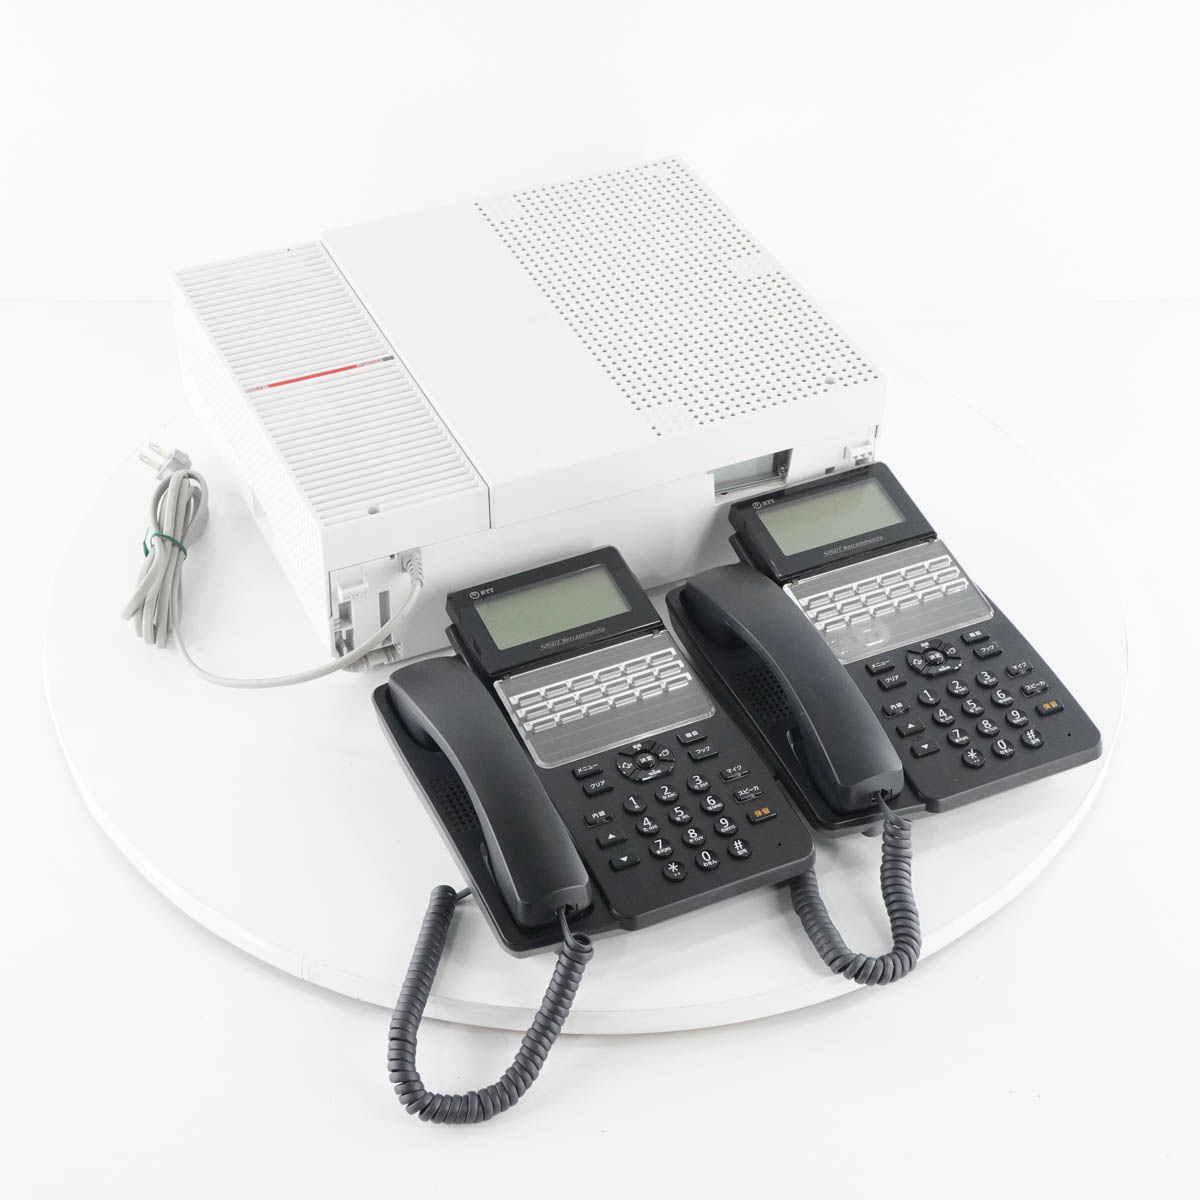 【中古】 PG 8日保証 セット 18年製 NTT αN1 αA1 N1S-ME-(1) 主装置 電話機 ビジネスフォン スマートネットコミュニティ A1-(18)S... 05149-0038